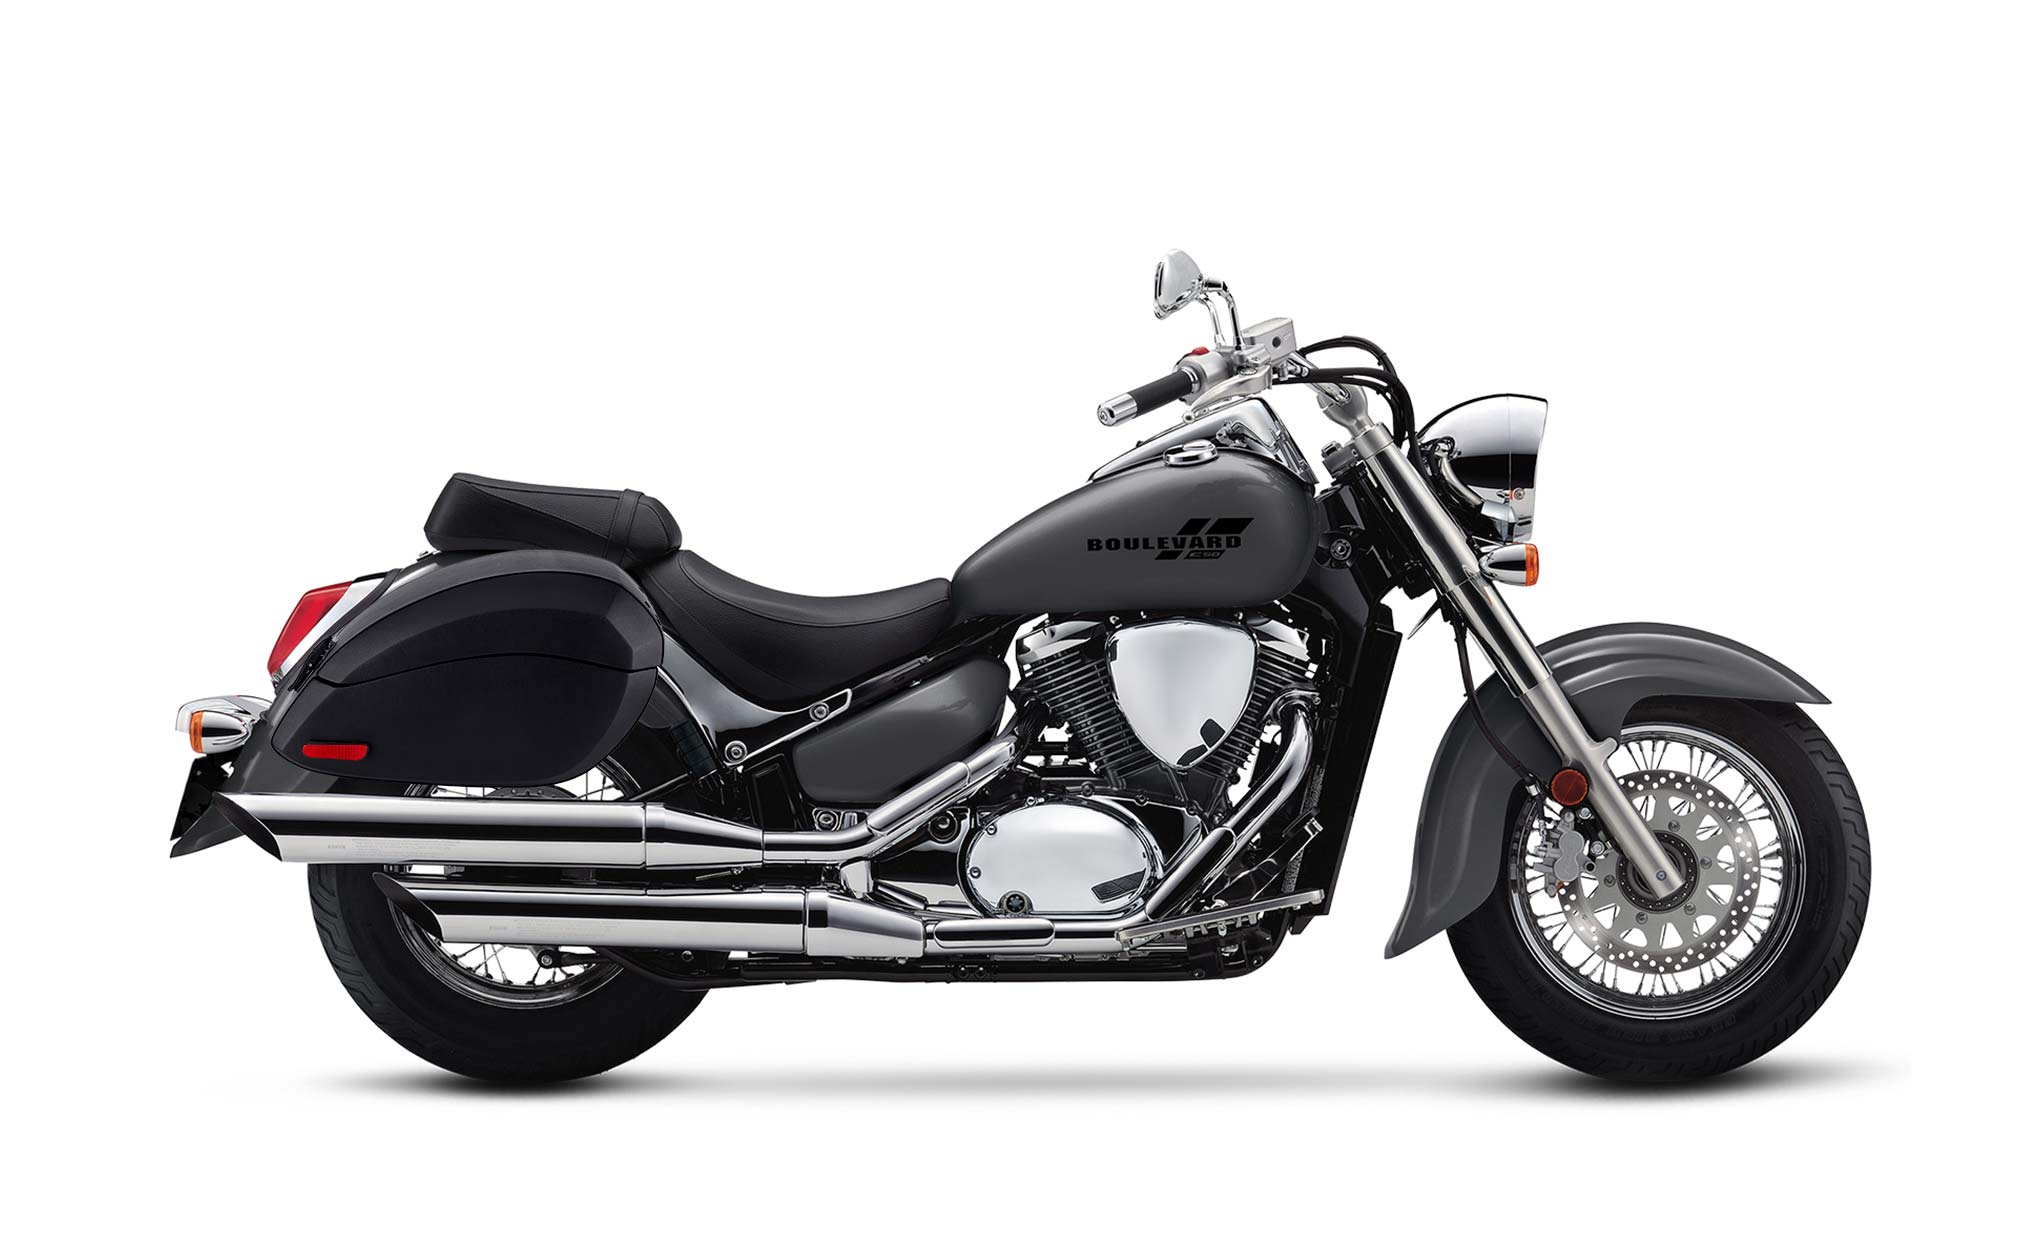 Viking Phantom Large Suzuki Boulevard C50 Vl800 Leather Wrapped Motorcycle Hard Saddlebags on Bike Photo @expand